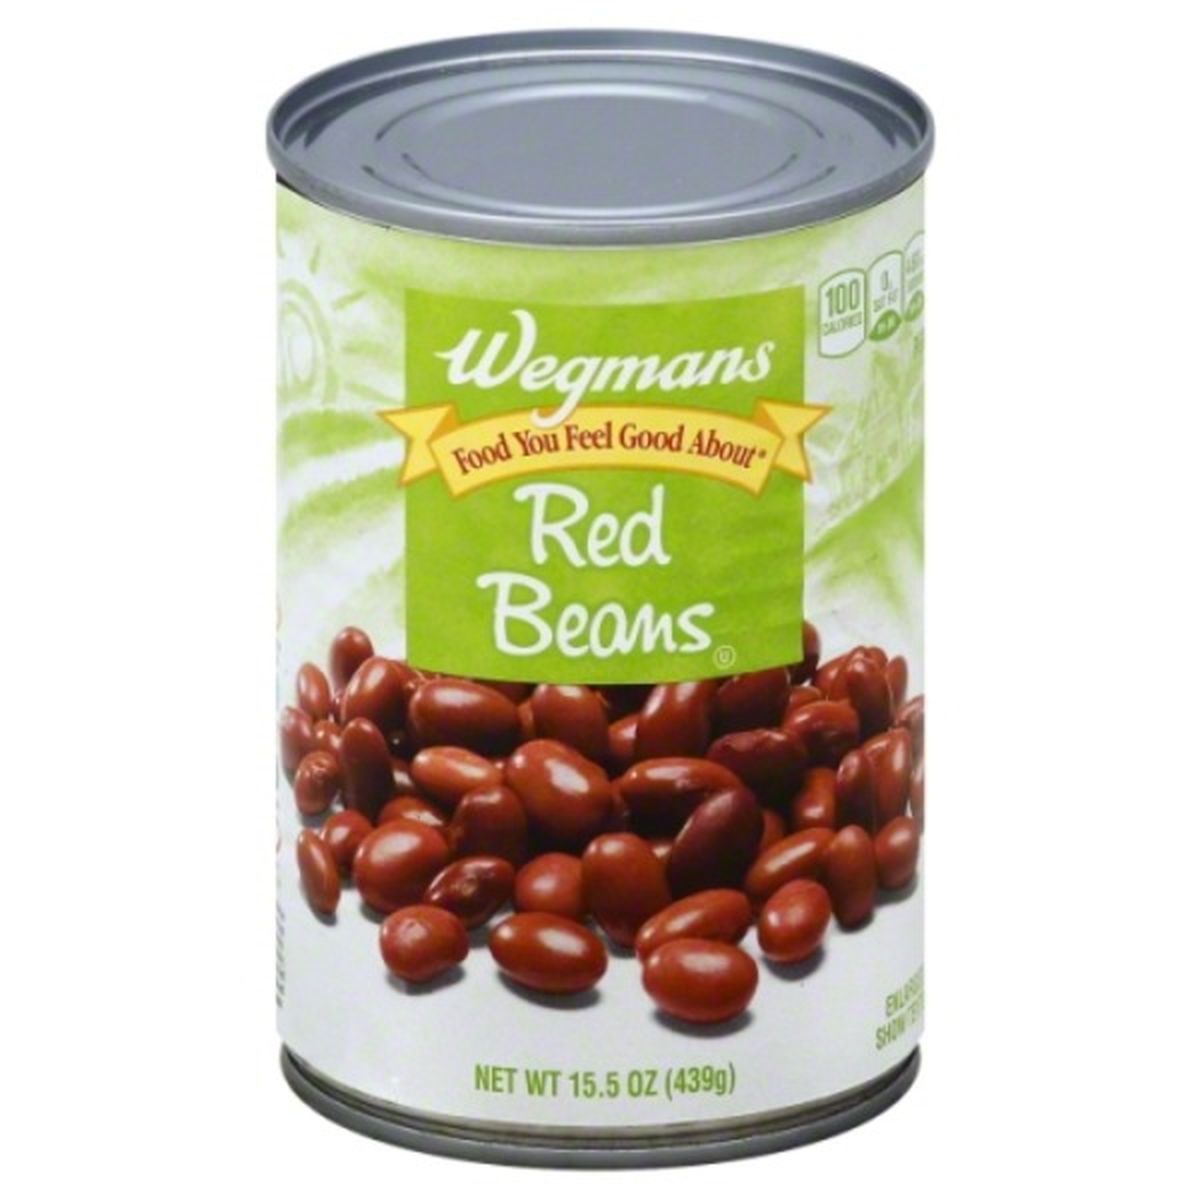 Calories in Wegmans Red Beans